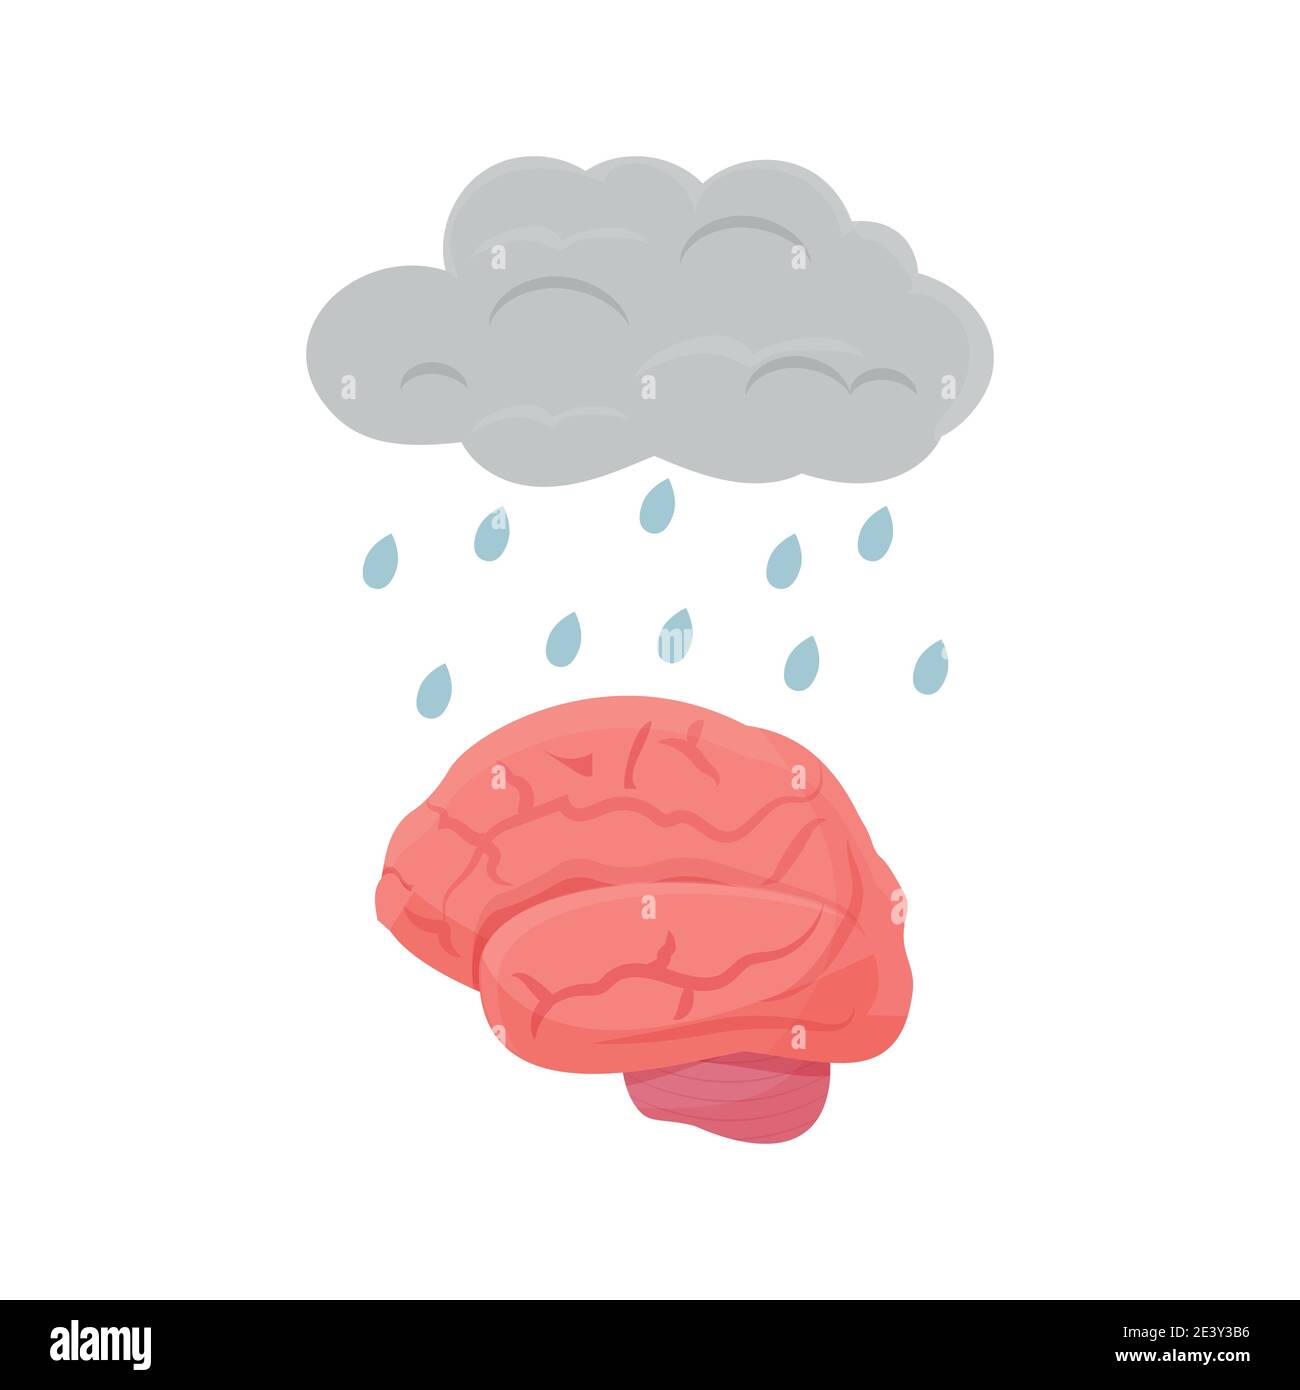 Metapher Wolke mit Regentropfen und menschlichen Gehirn Organ isoliert auf weißem Hintergrund. Stress, Sorge, Ärger und psychische Gesundheit Konzept. Psychologie Symptome Symbol. Vektorgrafik Stock Vektor